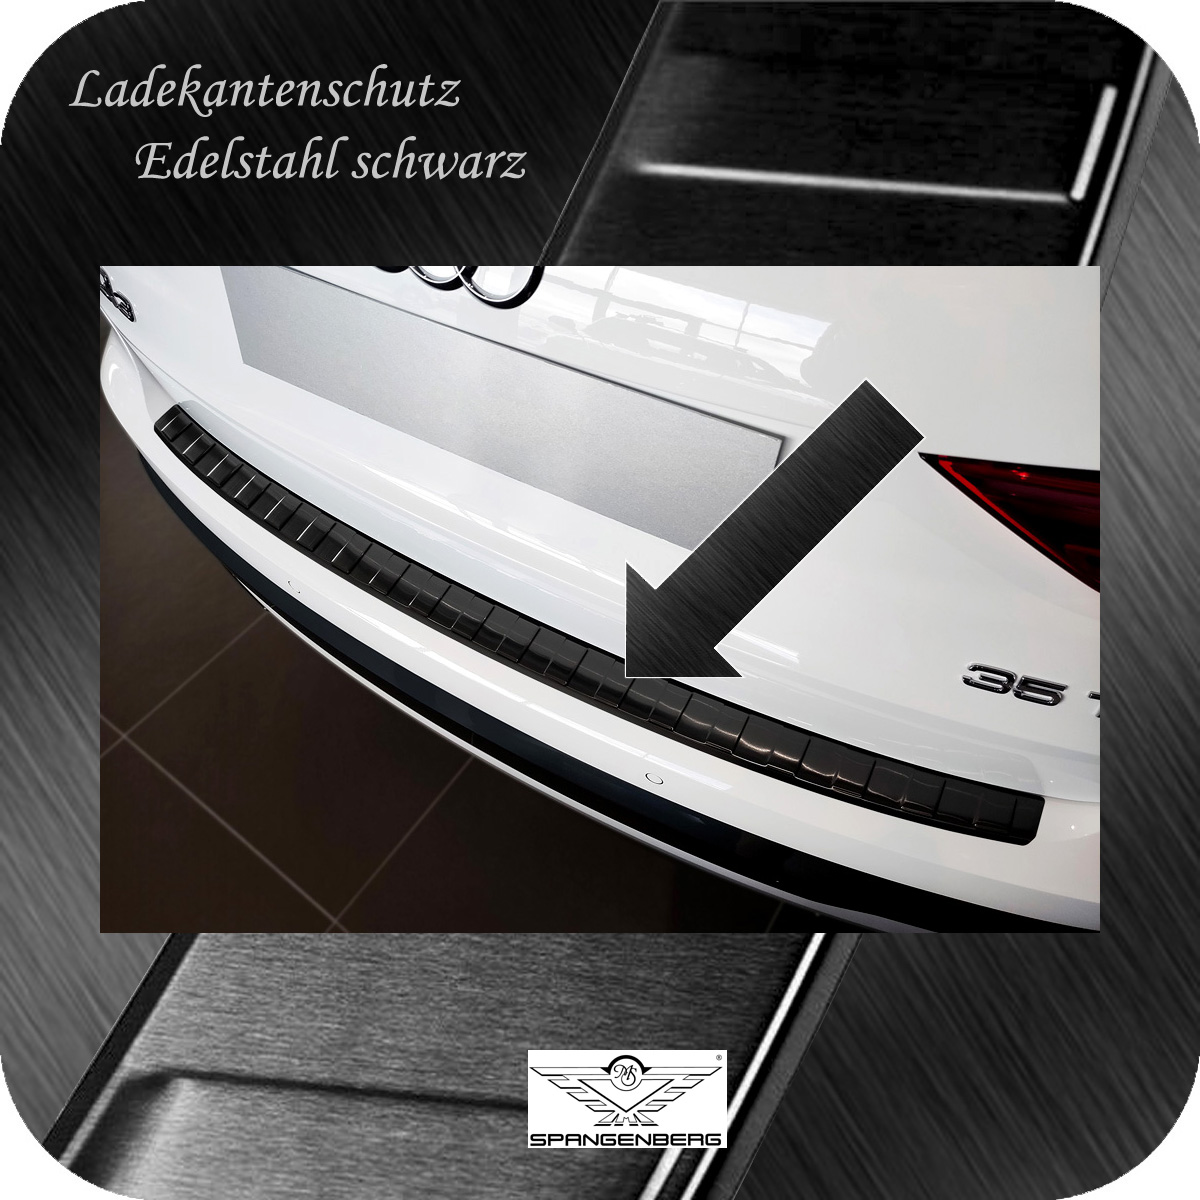 Ladekantenschutz Edelstahl schwarz für Audi Q3 Typ F3 ab Baujahr 9.2018- 3245358